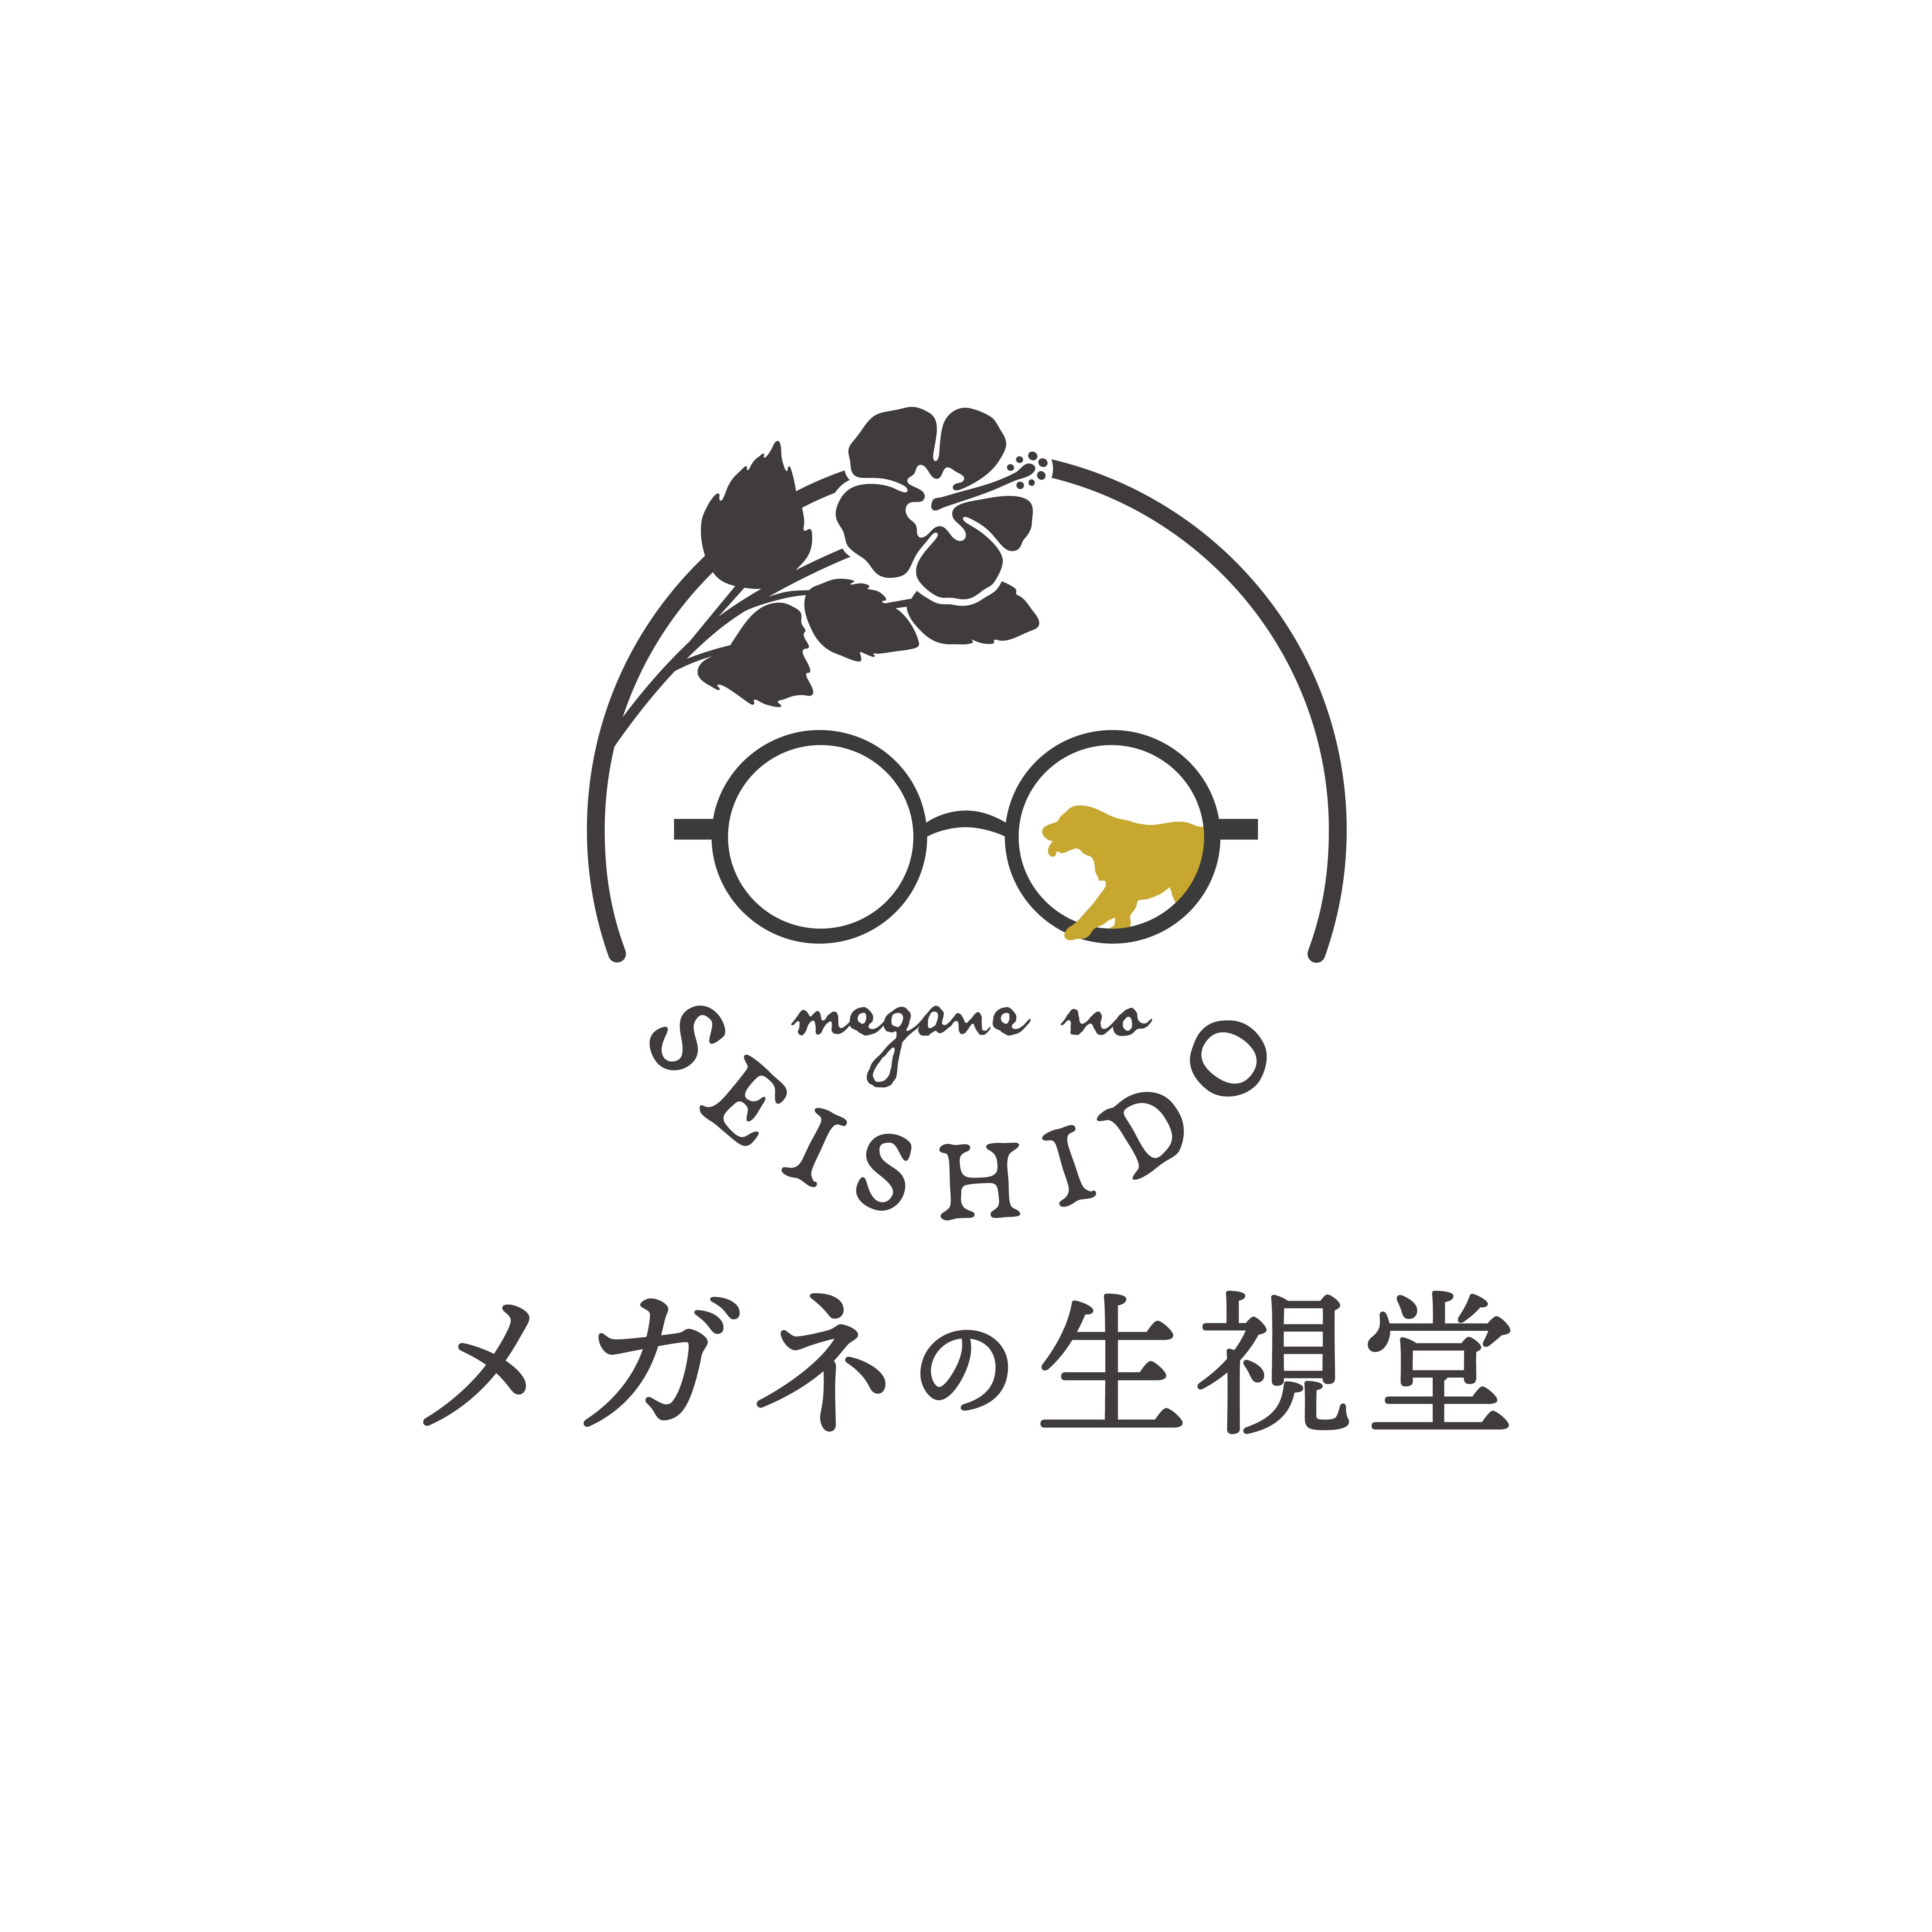 メガネの生視堂新ロゴ発表